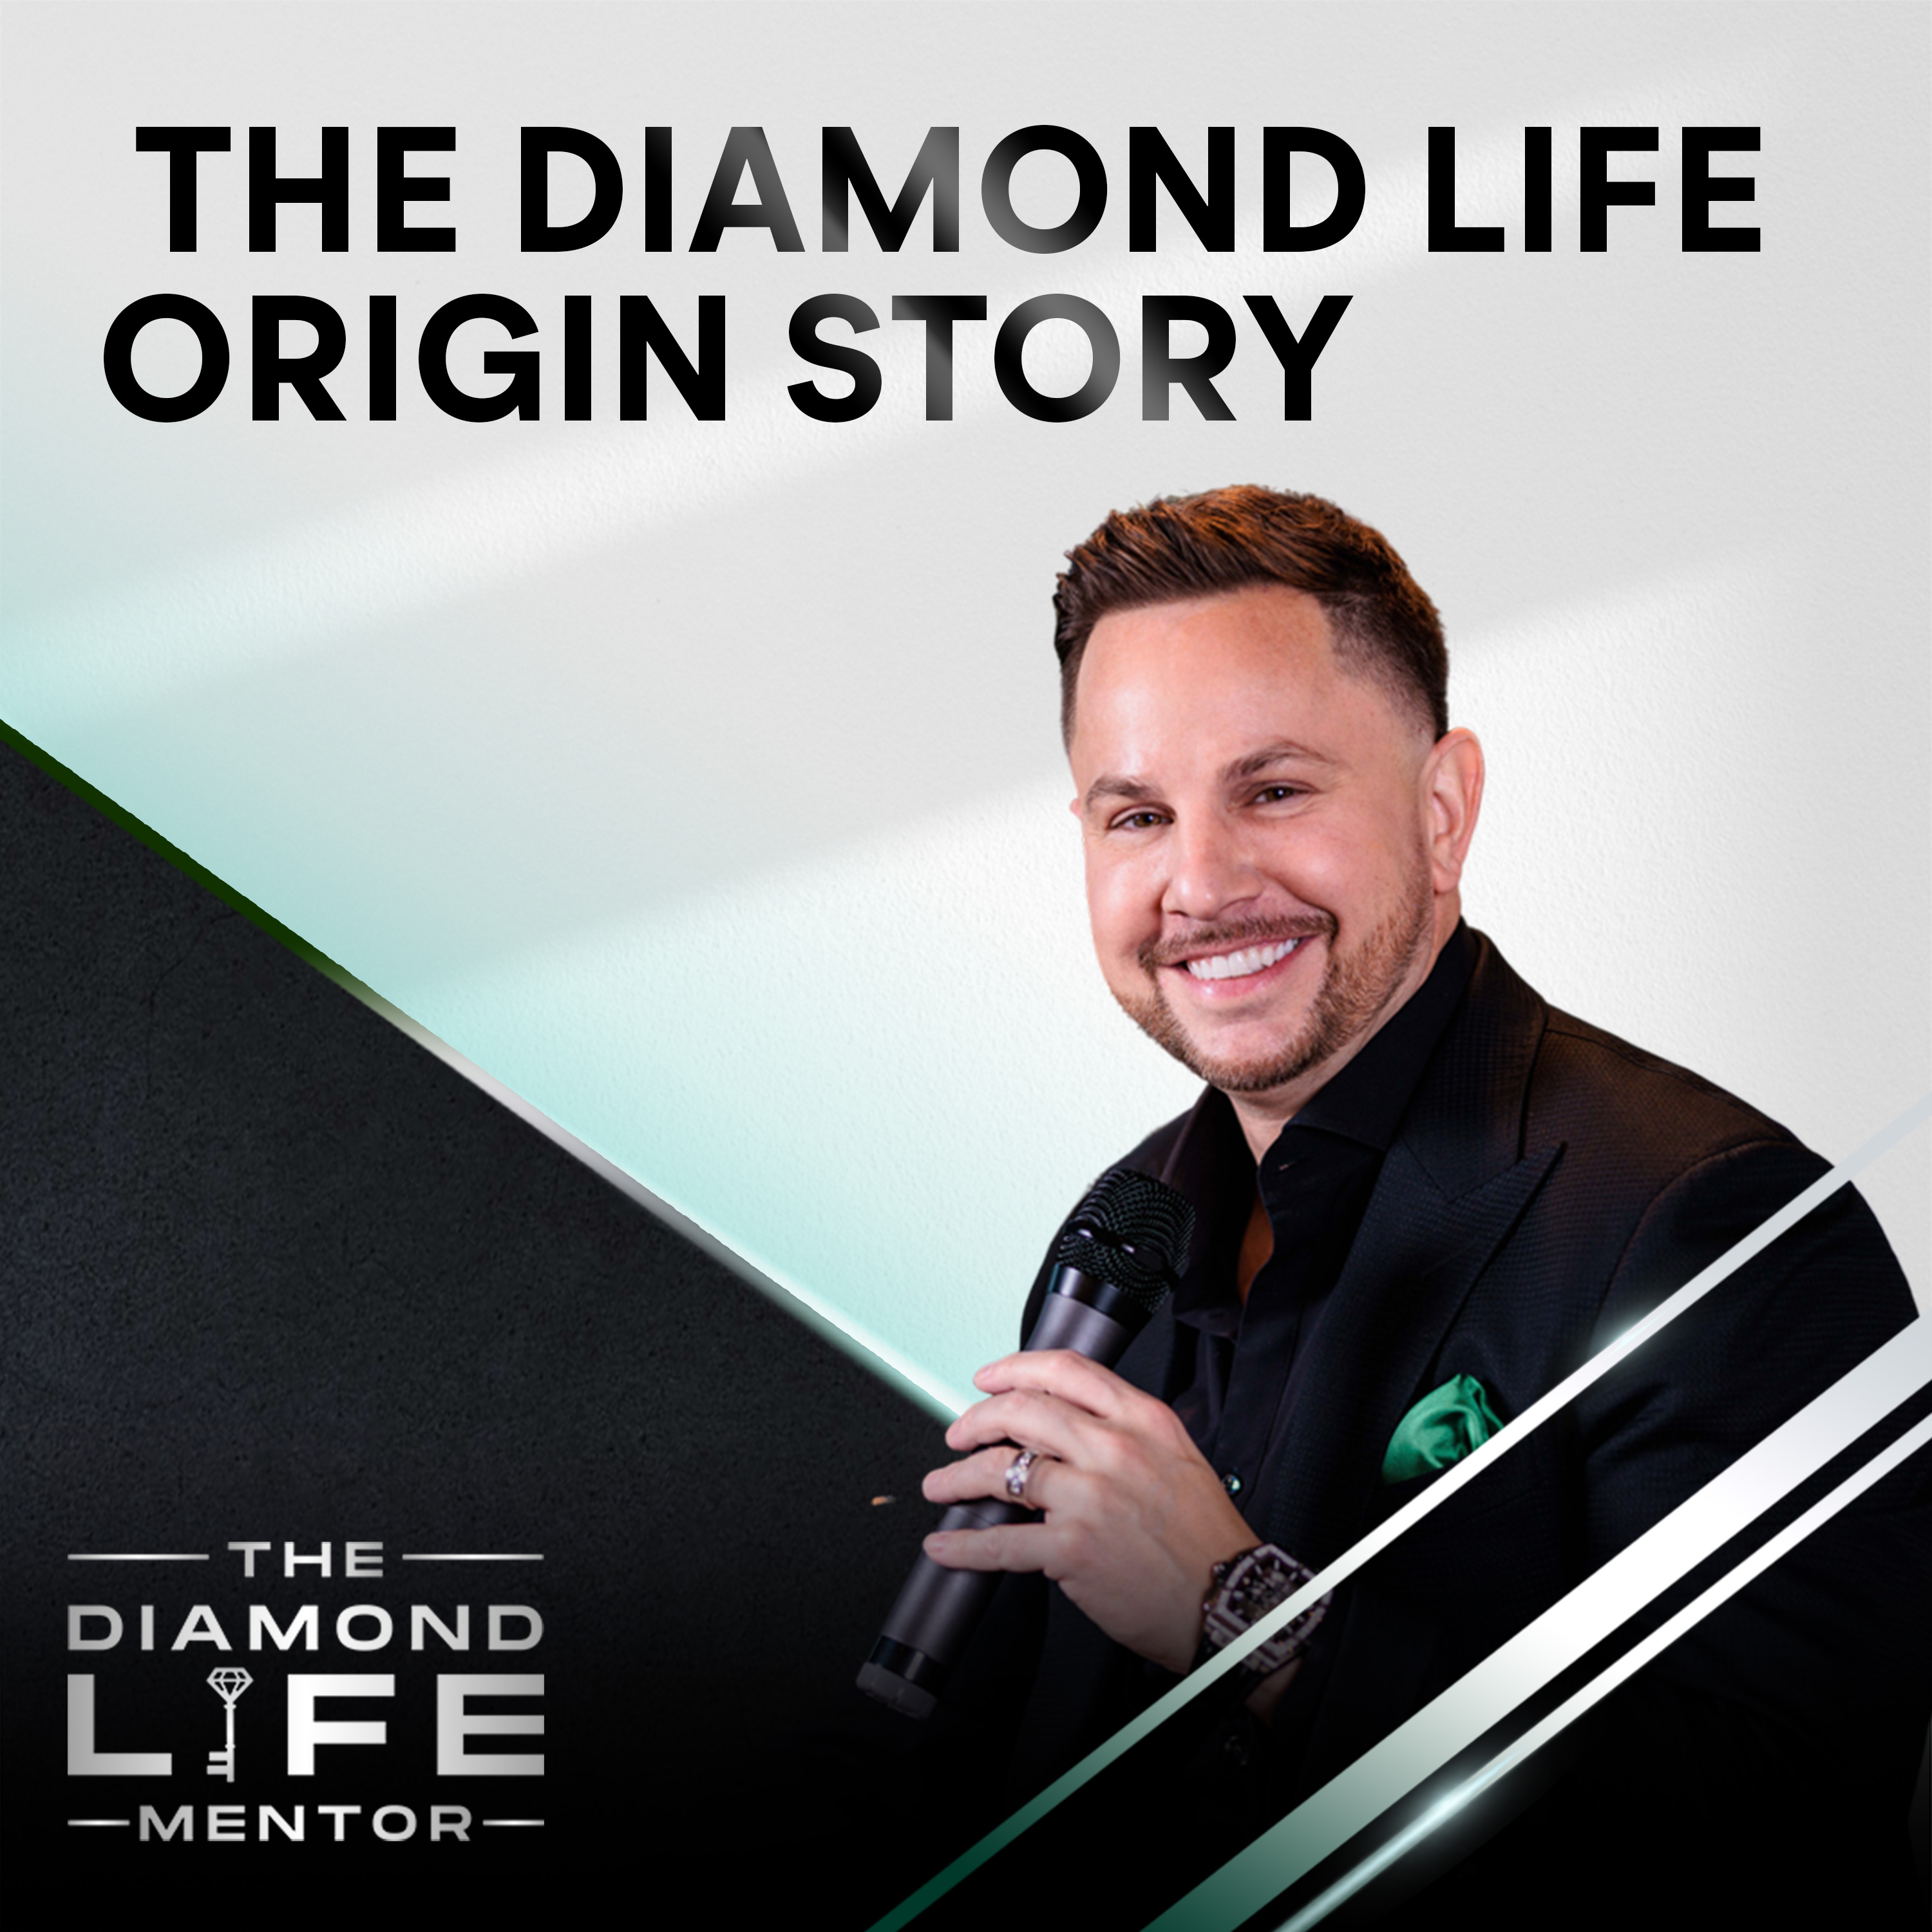 The Diamond Life Origin Story